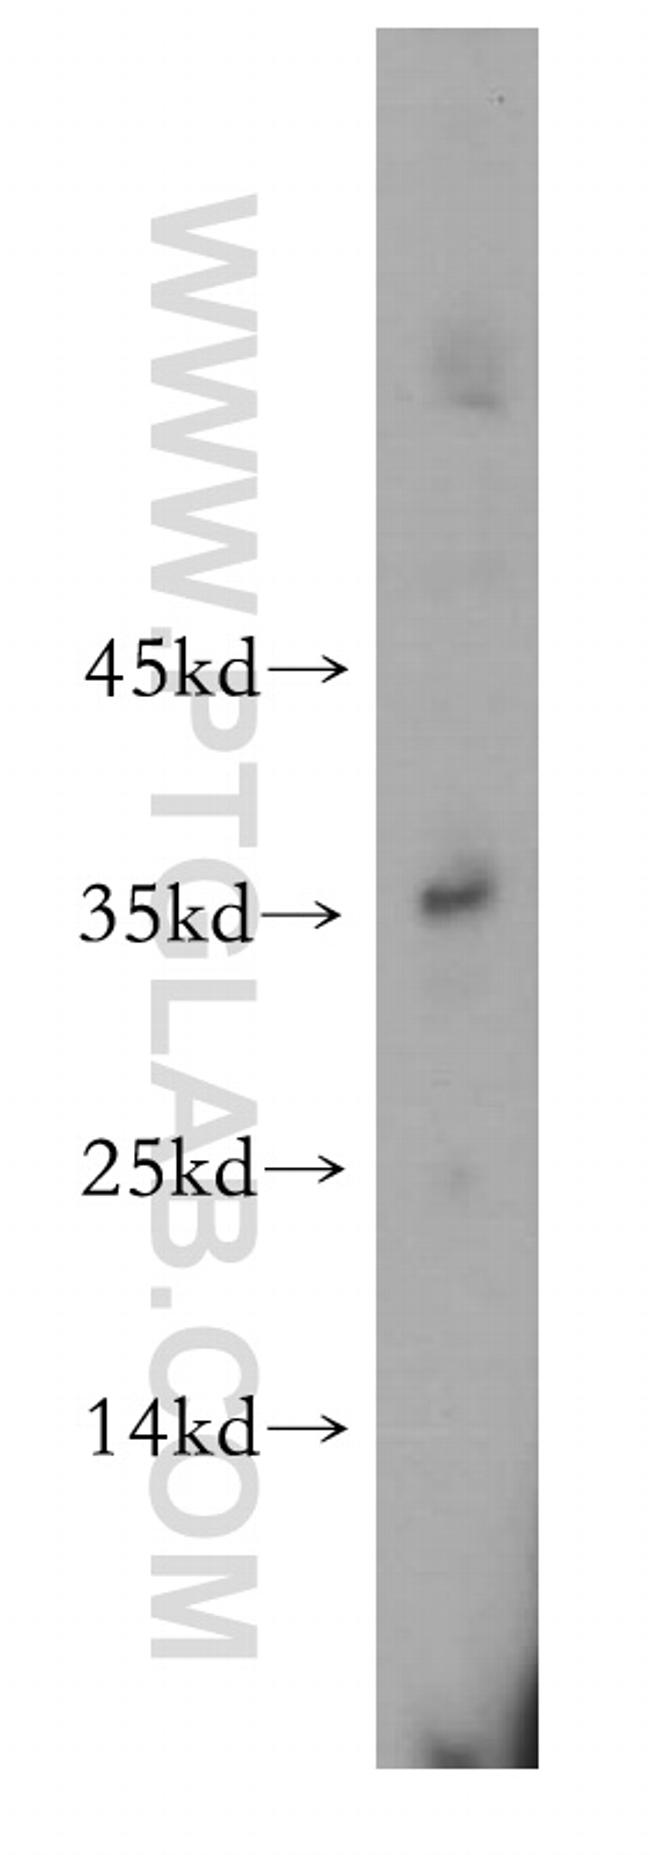 ATPAF1 Antibody in Western Blot (WB)